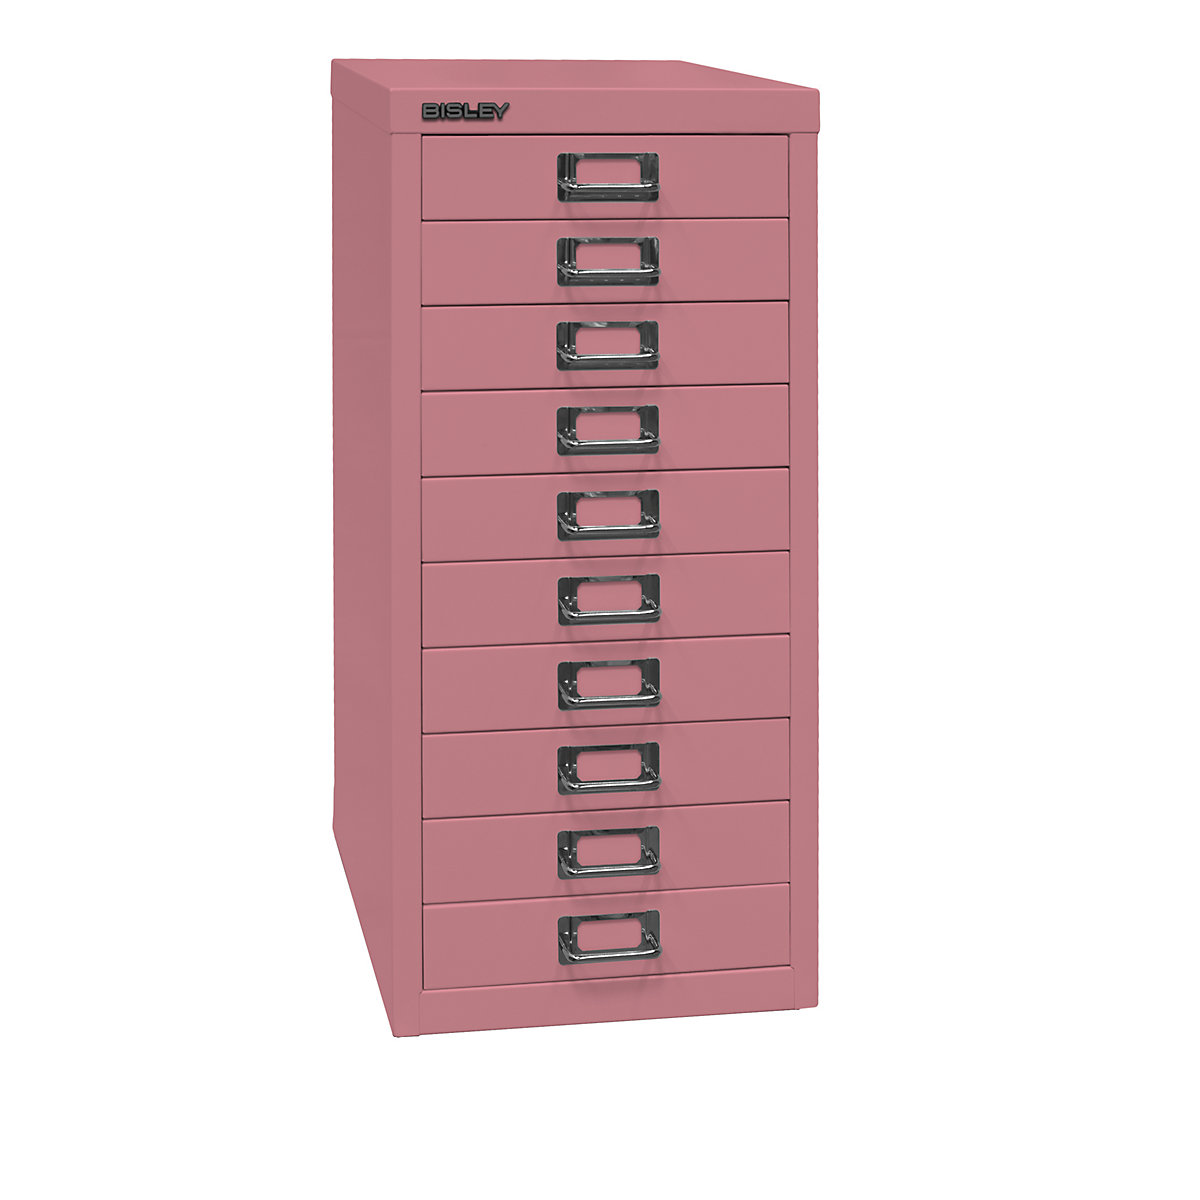 Predalnik MultiDrawer™, serija 29 – BISLEY, DIN A4, 10 predalov, roza-11